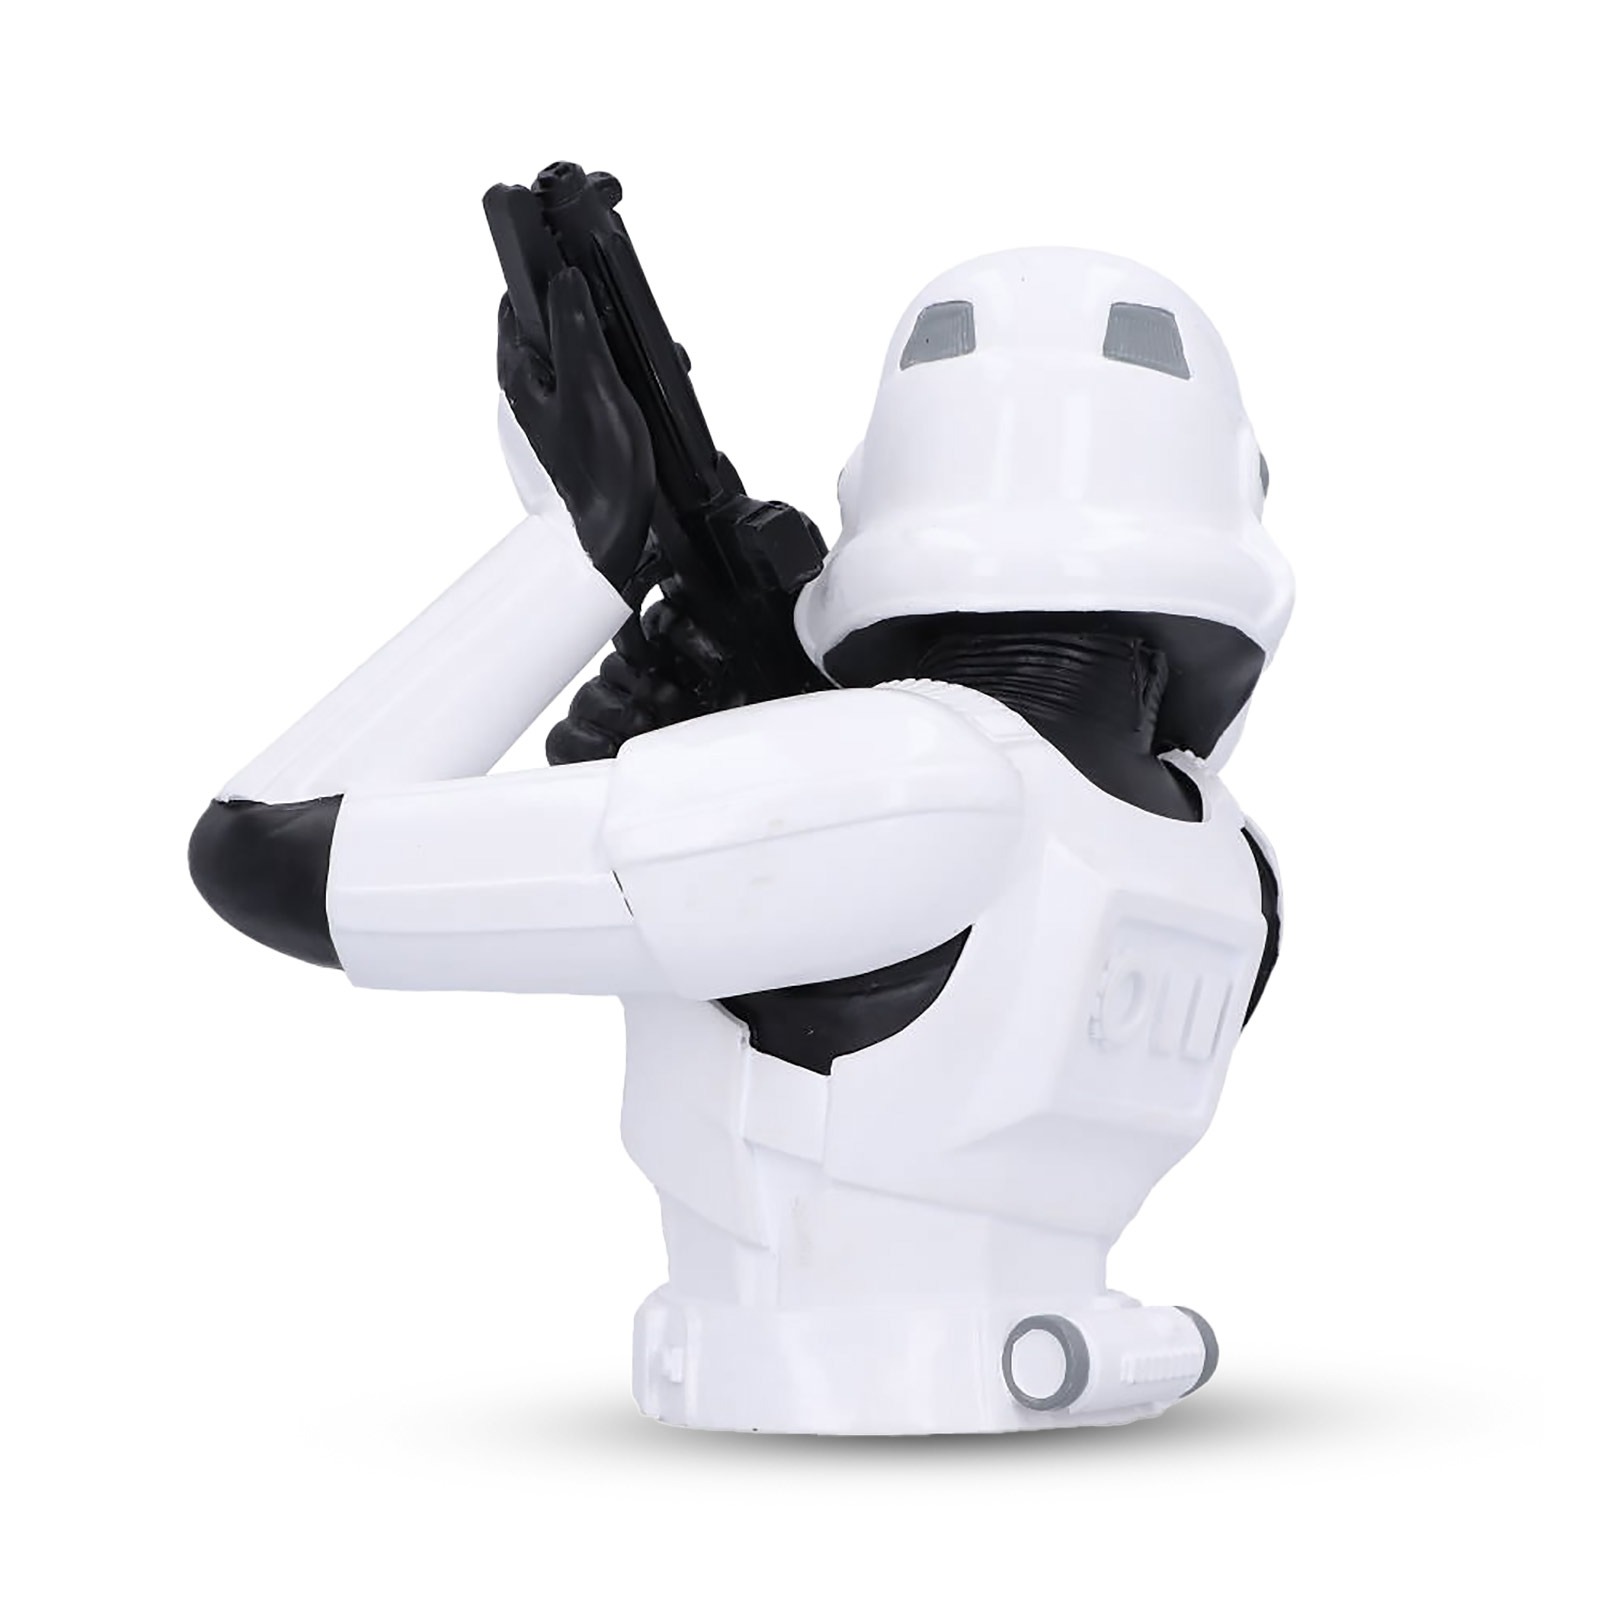 Buste de Stormtrooper original pour les fans de Star Wars